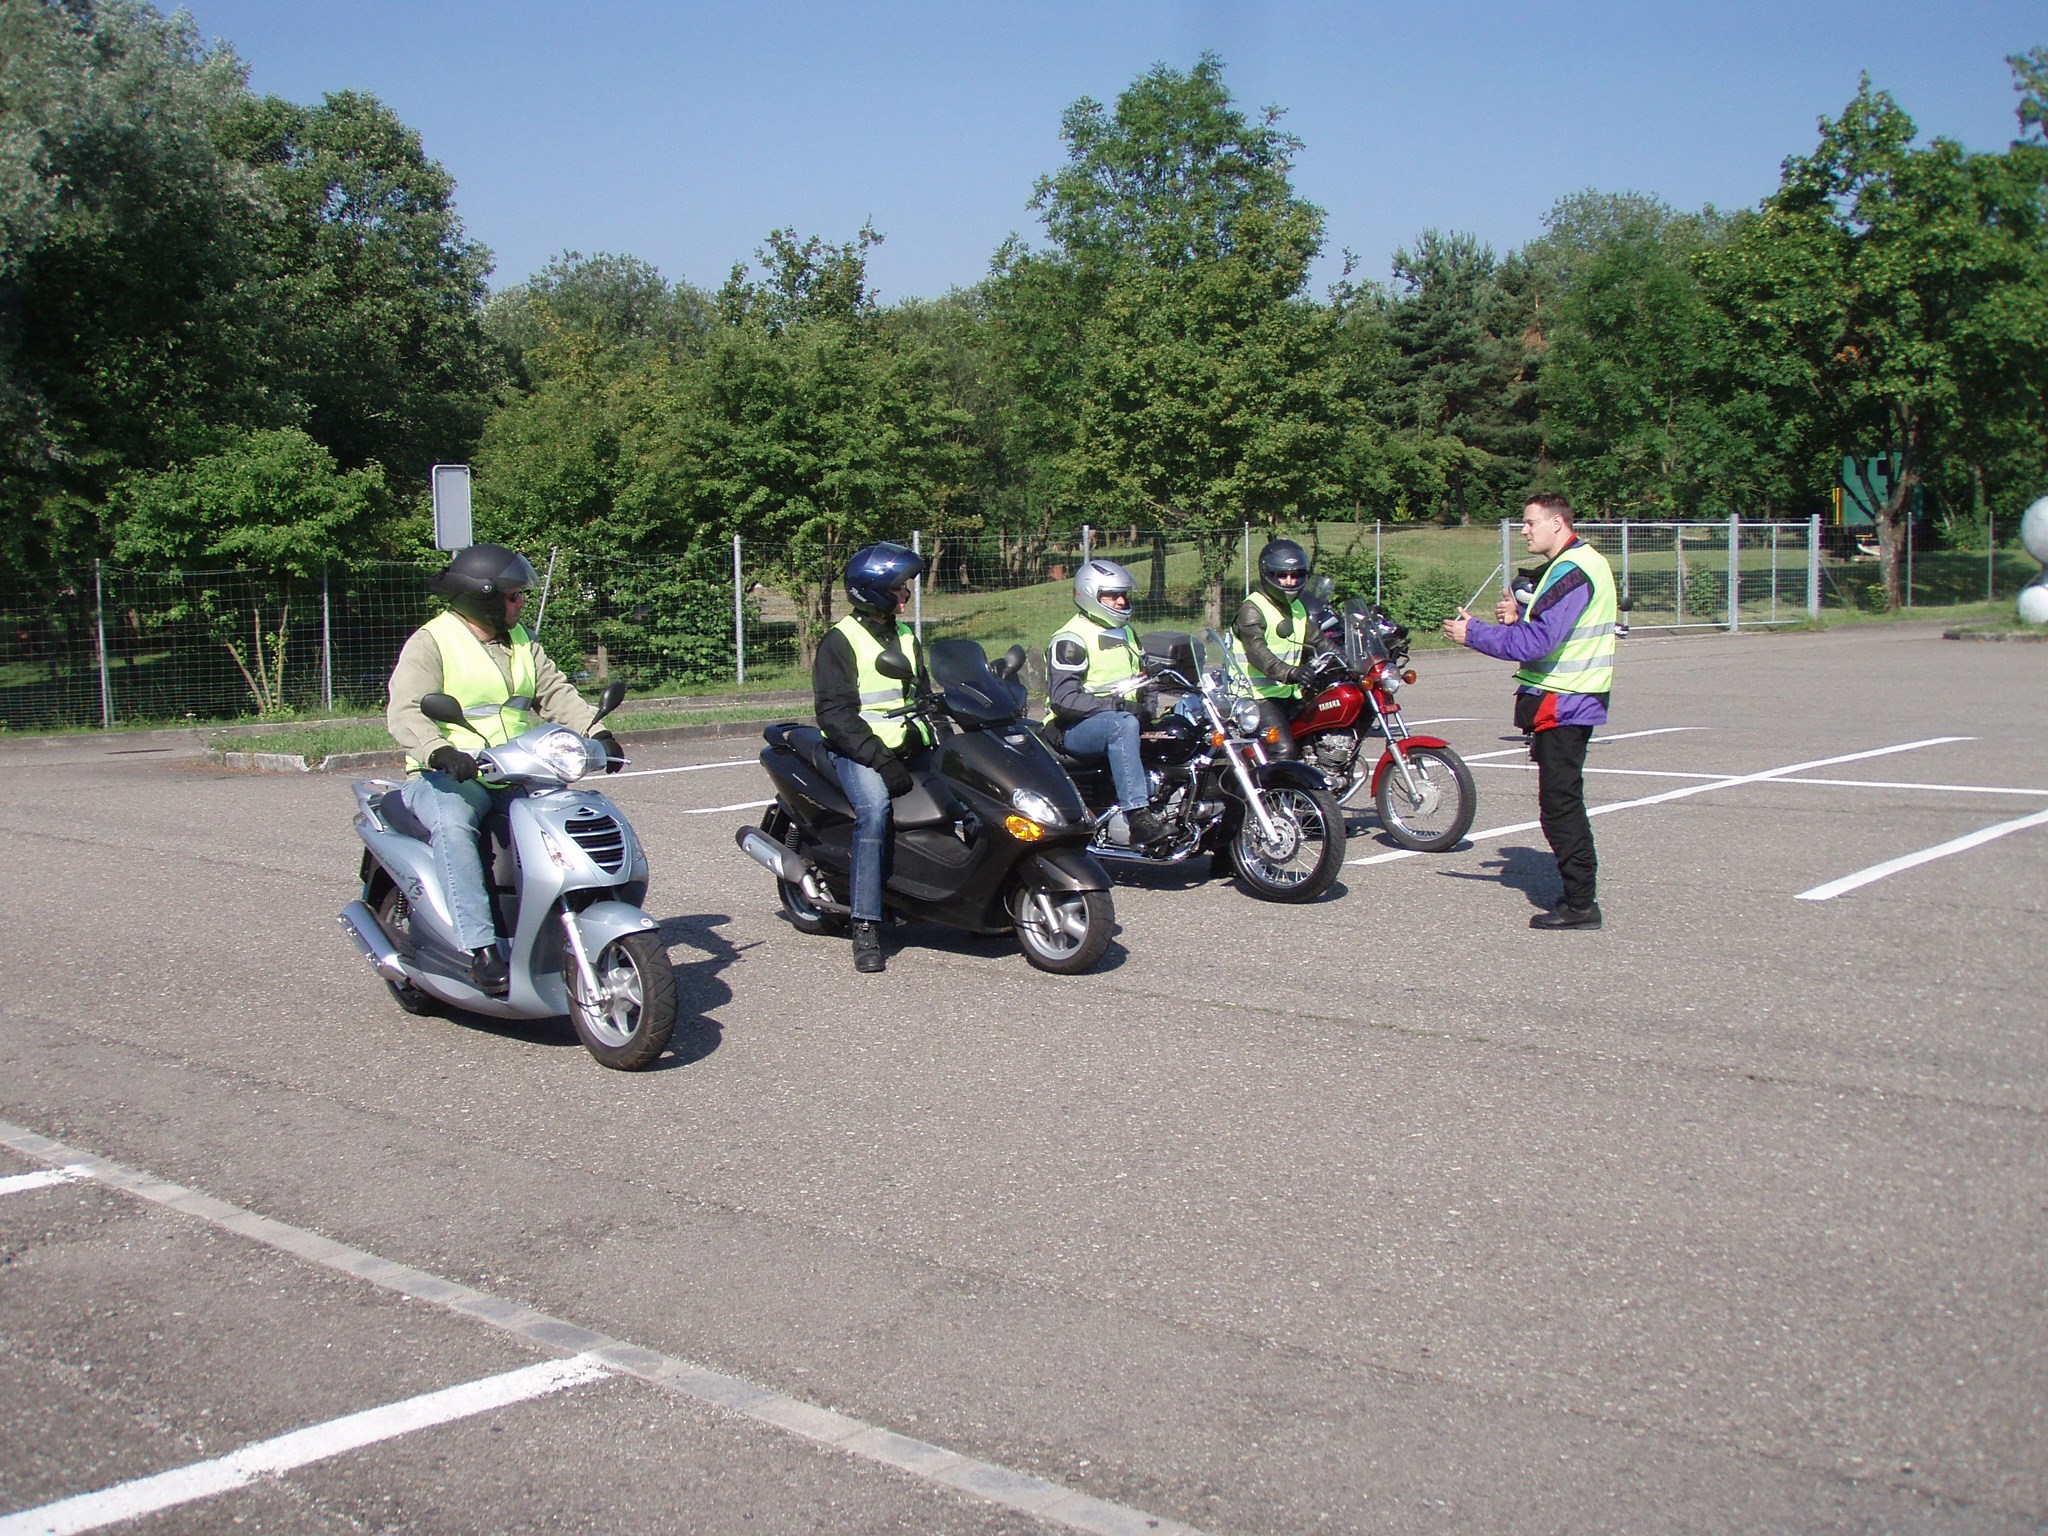 preiswerte und seriöse ABCD Fahrschule Winterthur obligatorische Zweiradgrundkurse Motorradgrundkurse  und Rollergrundkurse Winterthur Motorradfahrerfahrschule und Rollerfahrerfahrschule Kategorie A2 bis 35 kw